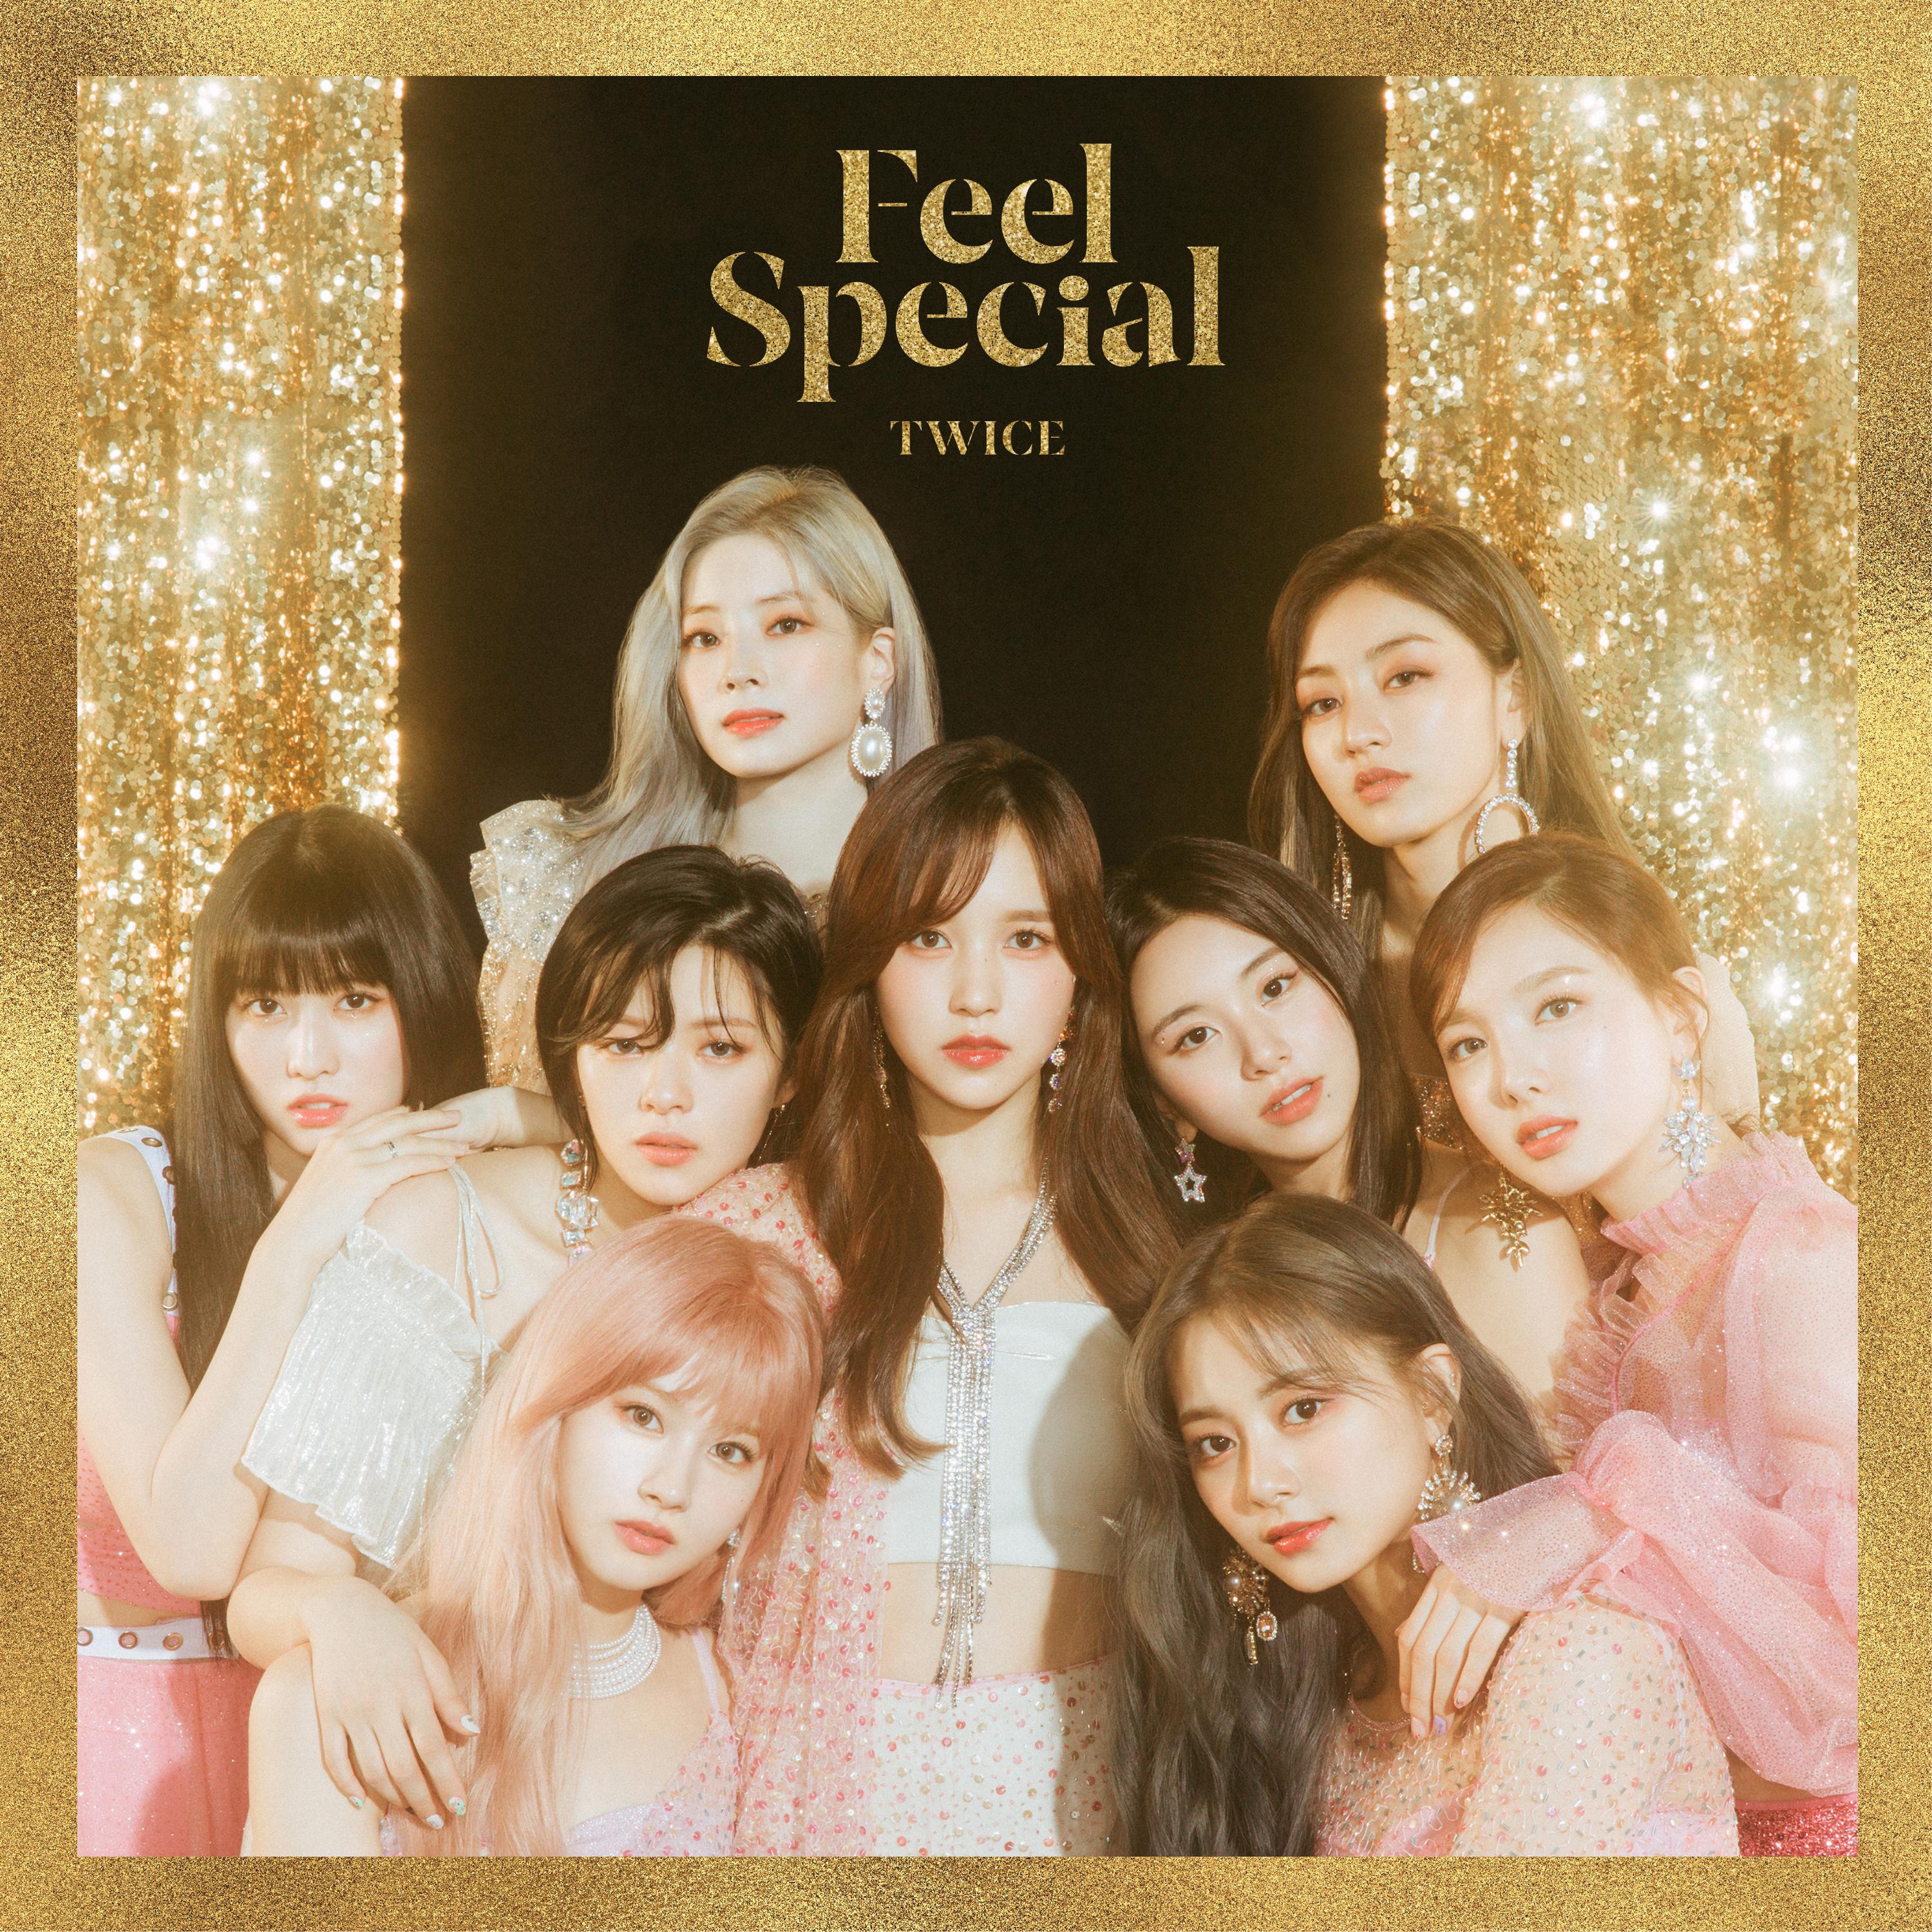 Feel Special歌词 歌手TWICE-专辑Feel Special-单曲《Feel Special》LRC歌词下载